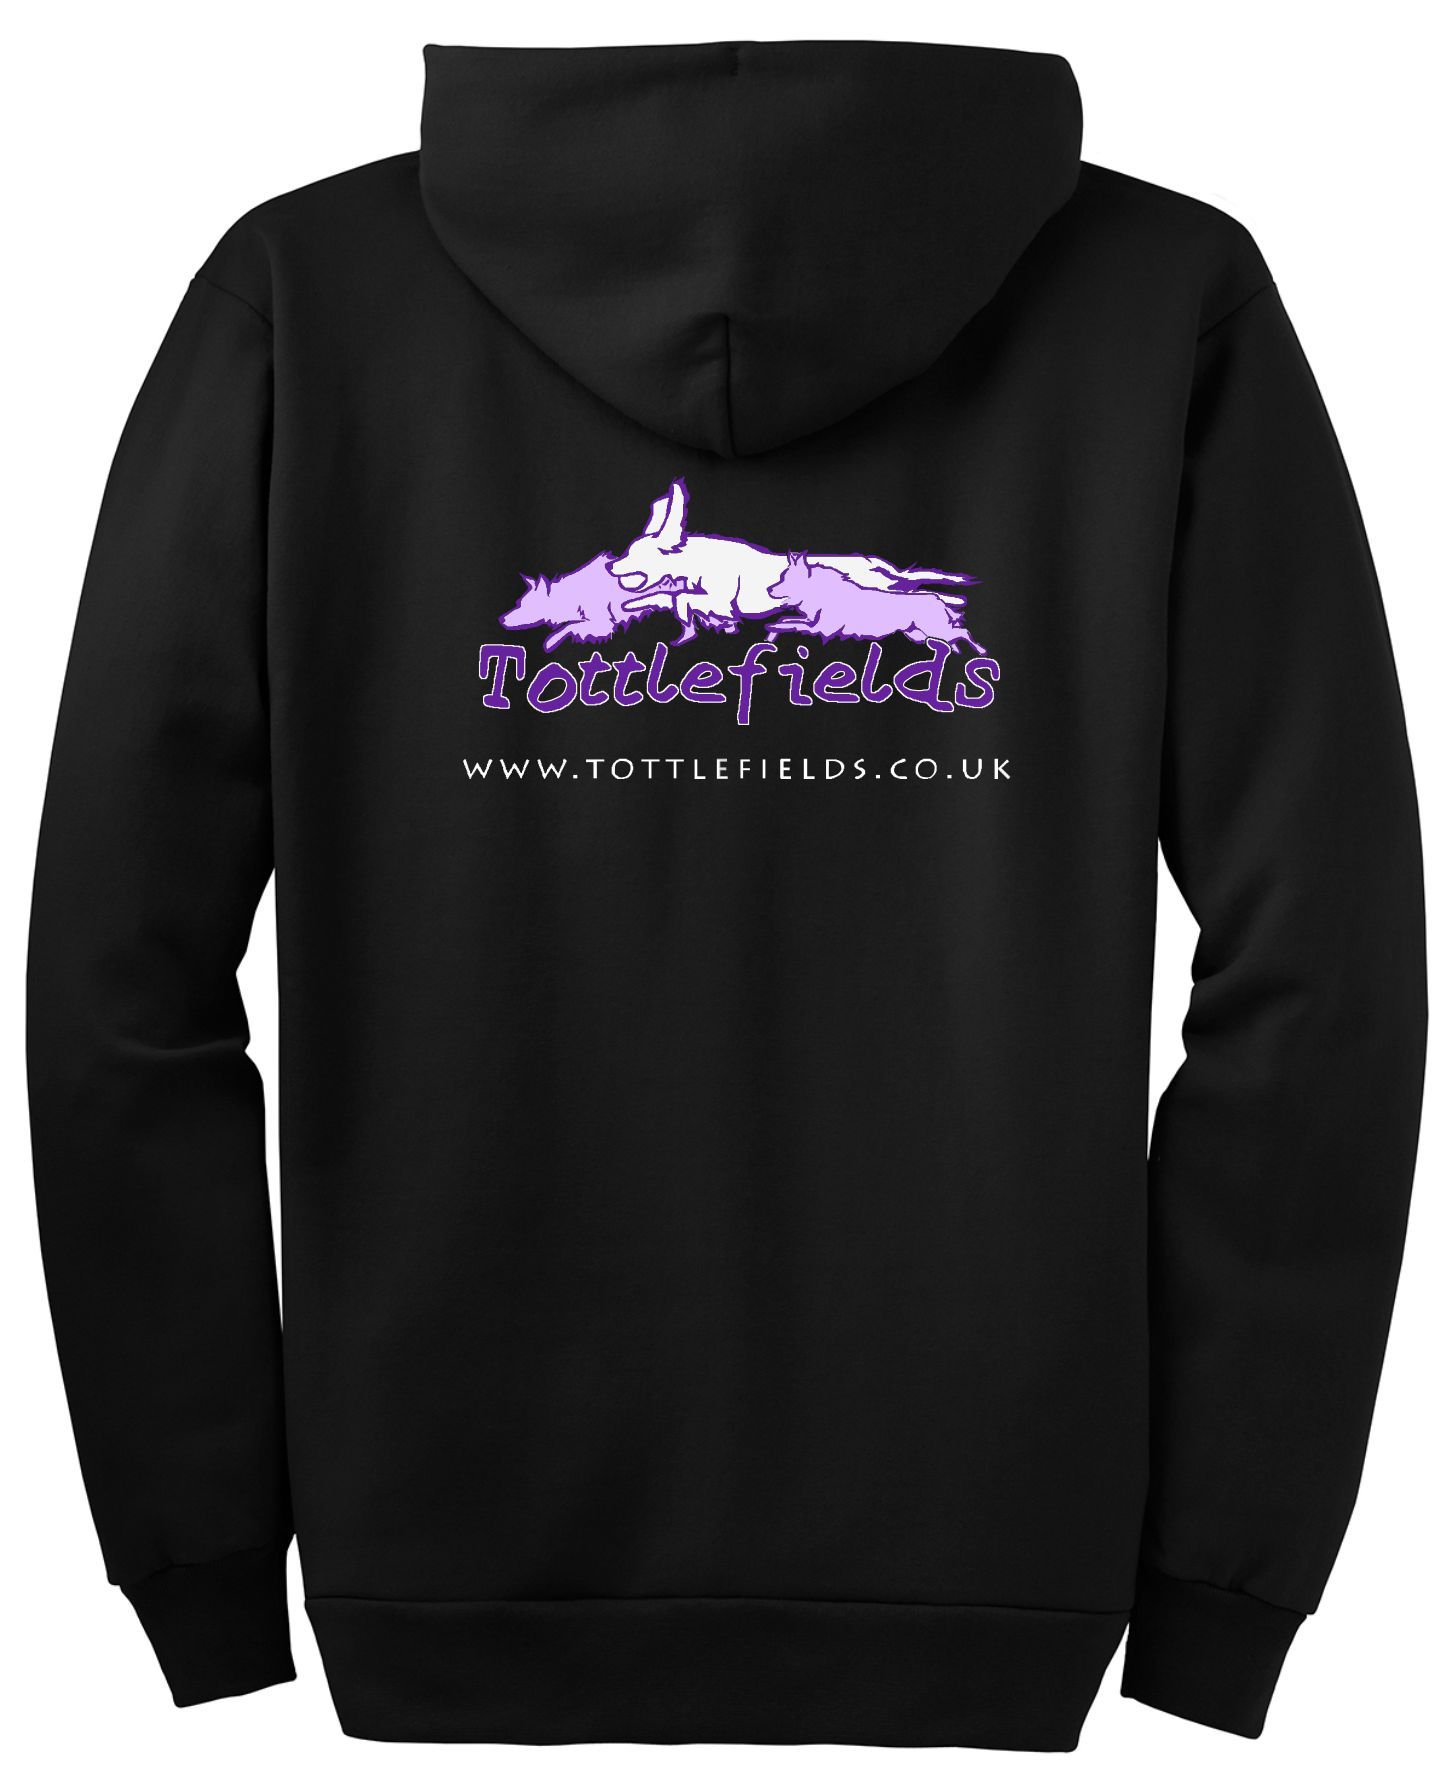 Tottlefields - Jet Black/ Purple Contrast Hoodie